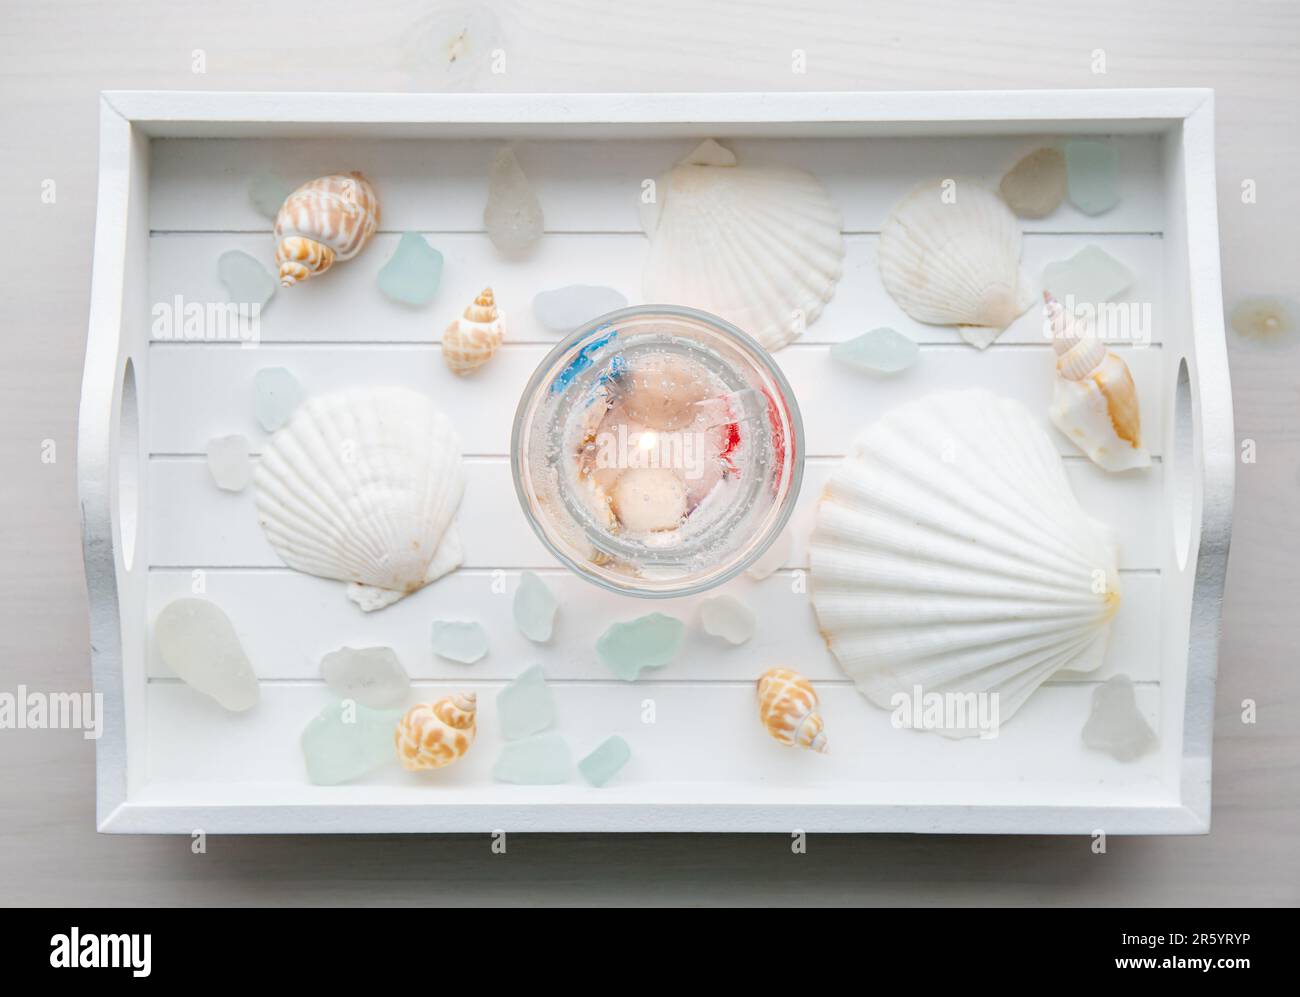 Au-dessus de la vue de la maison sous-marin seashell gel transparent cire bougie à l'intérieur transparent tasse. Belle bougie sur plateau en bois blanc avec verre de mer et coquillages. Banque D'Images